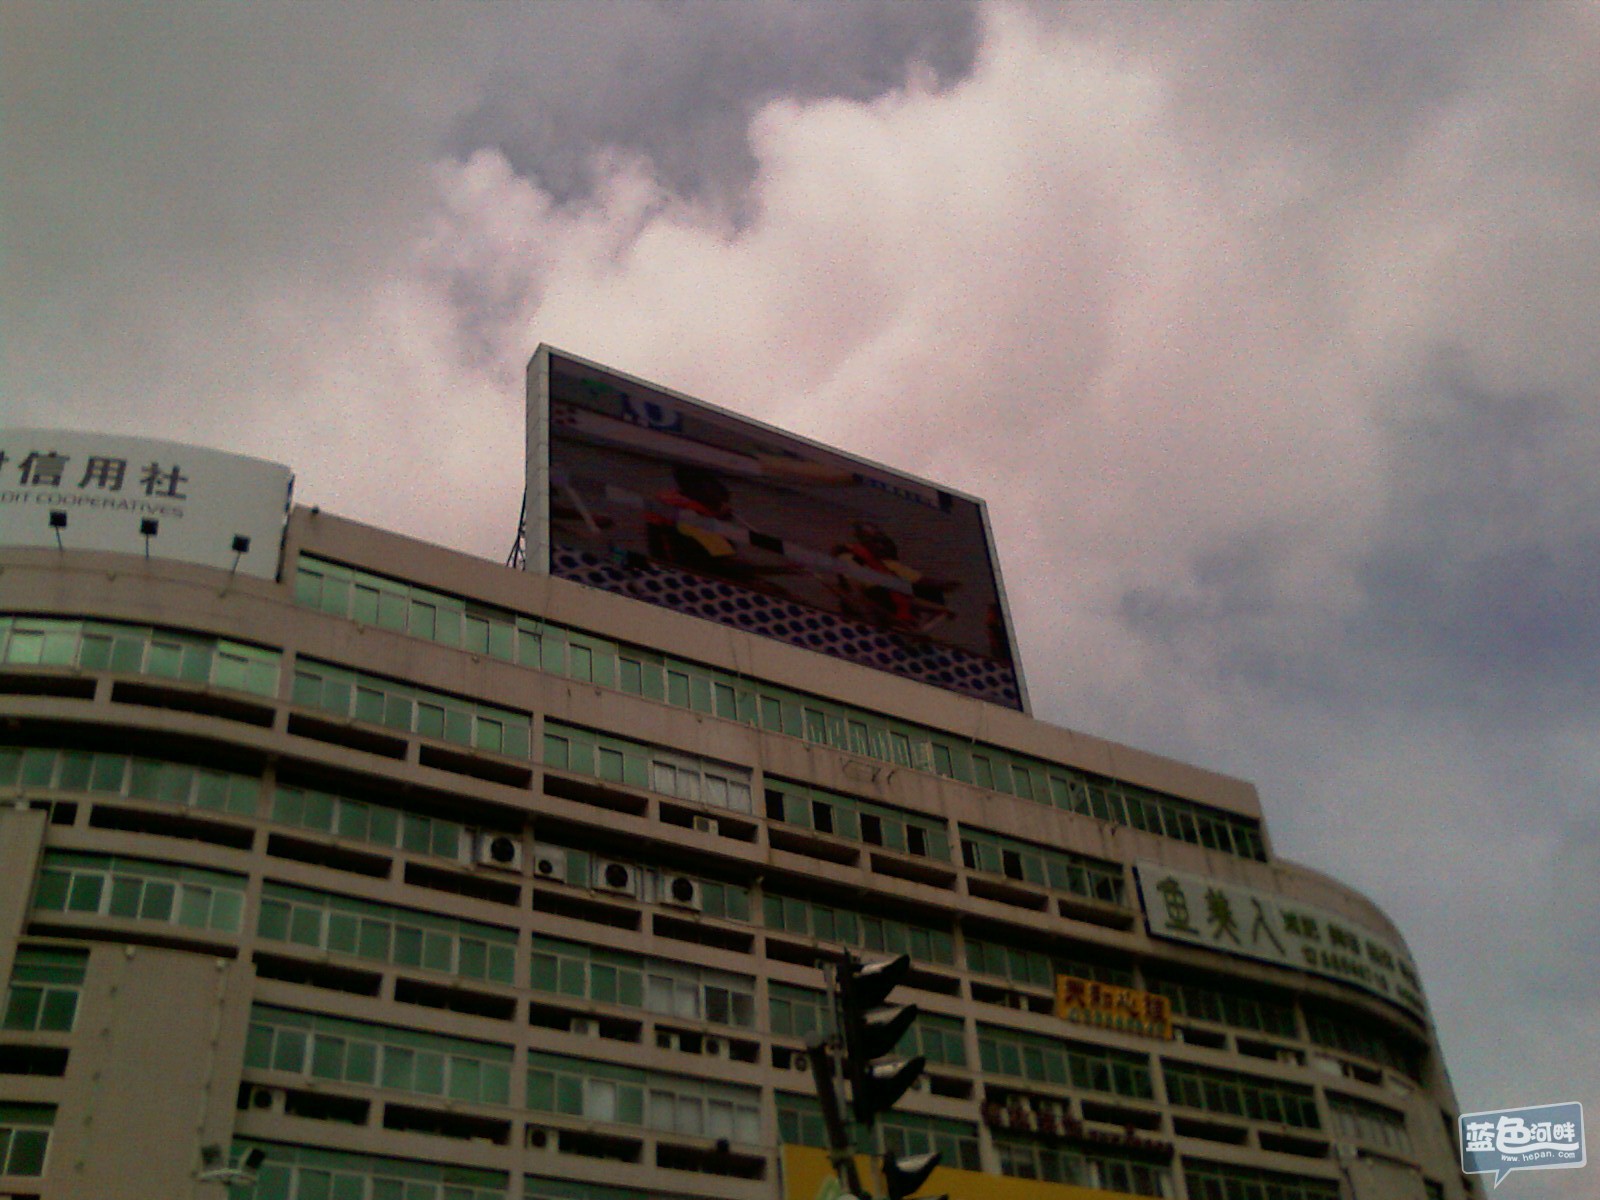 十字路口一LED屏也在直播滨海龙舟节目